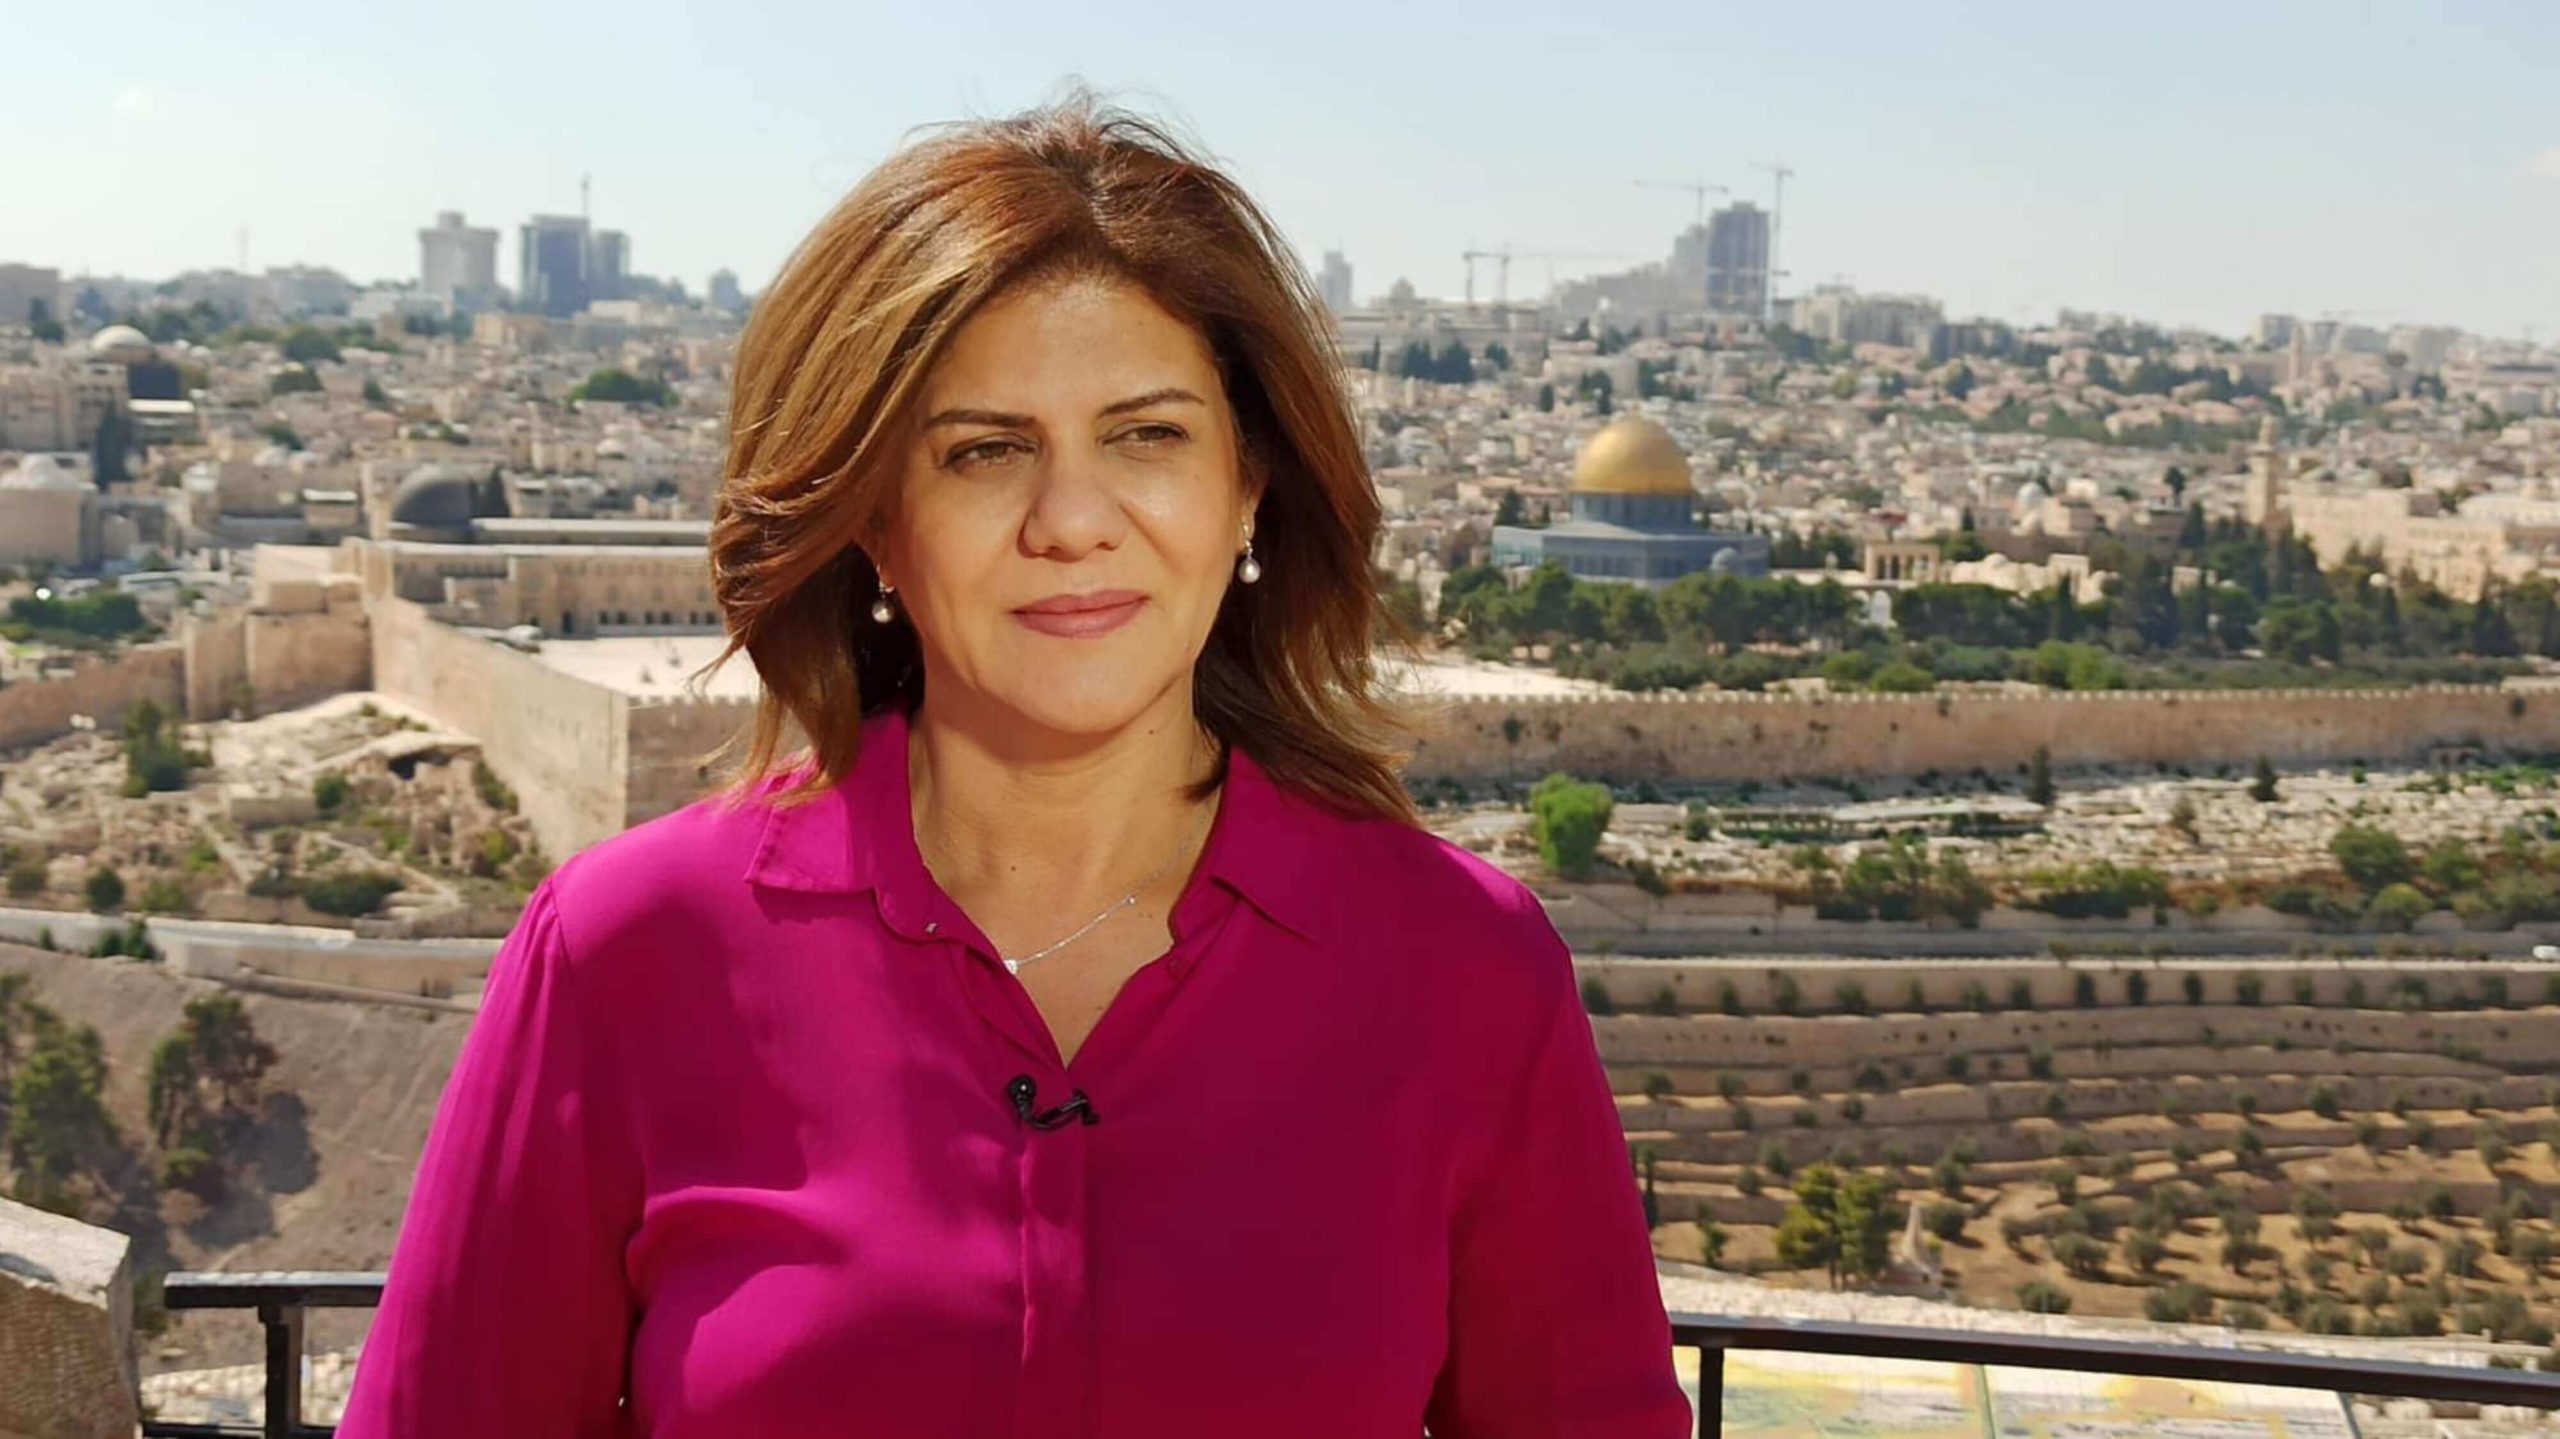 شيرين أبو عاقلة الفلسطينية صحافية مخضرمة كانت من أولى الوجوه التي ظهرت على شاشة قناة "الجزيرة" القطرية